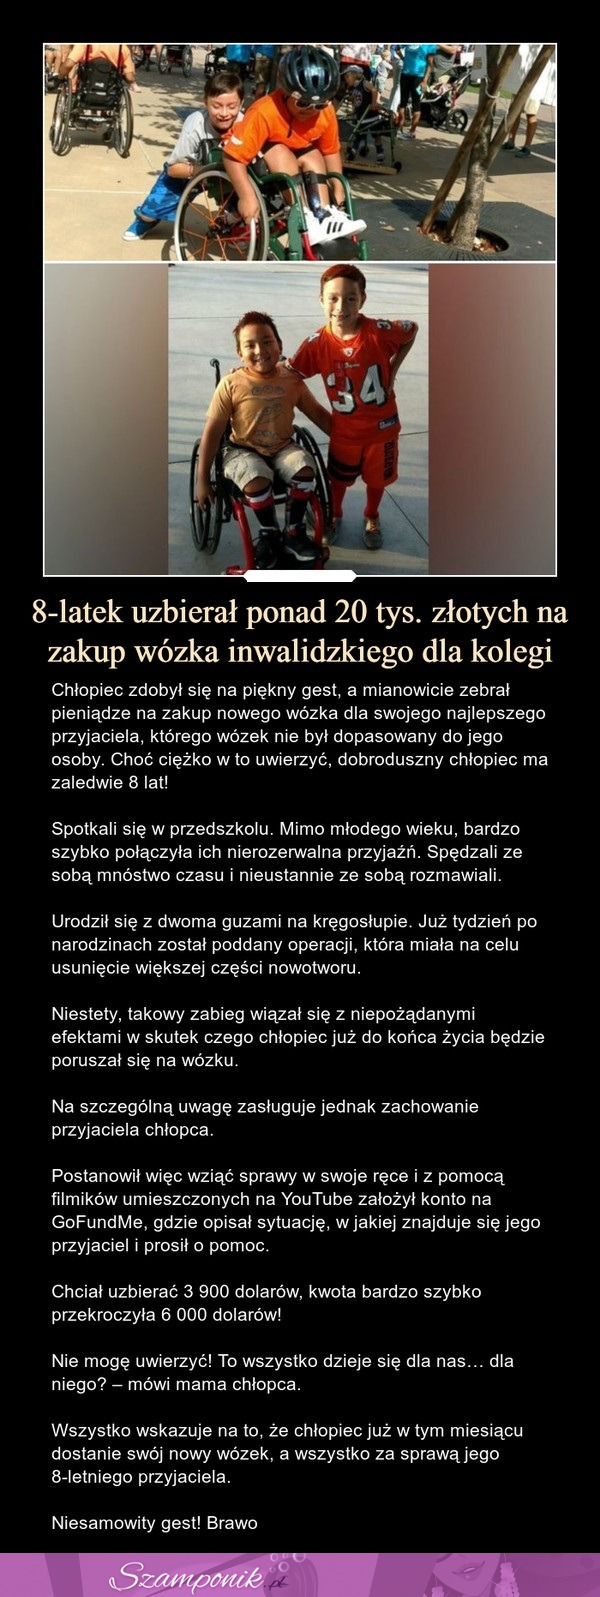 8-latek uzbierał ponad 20 tys. złotych na zakup wózka inwalidzkiego dla kolegi